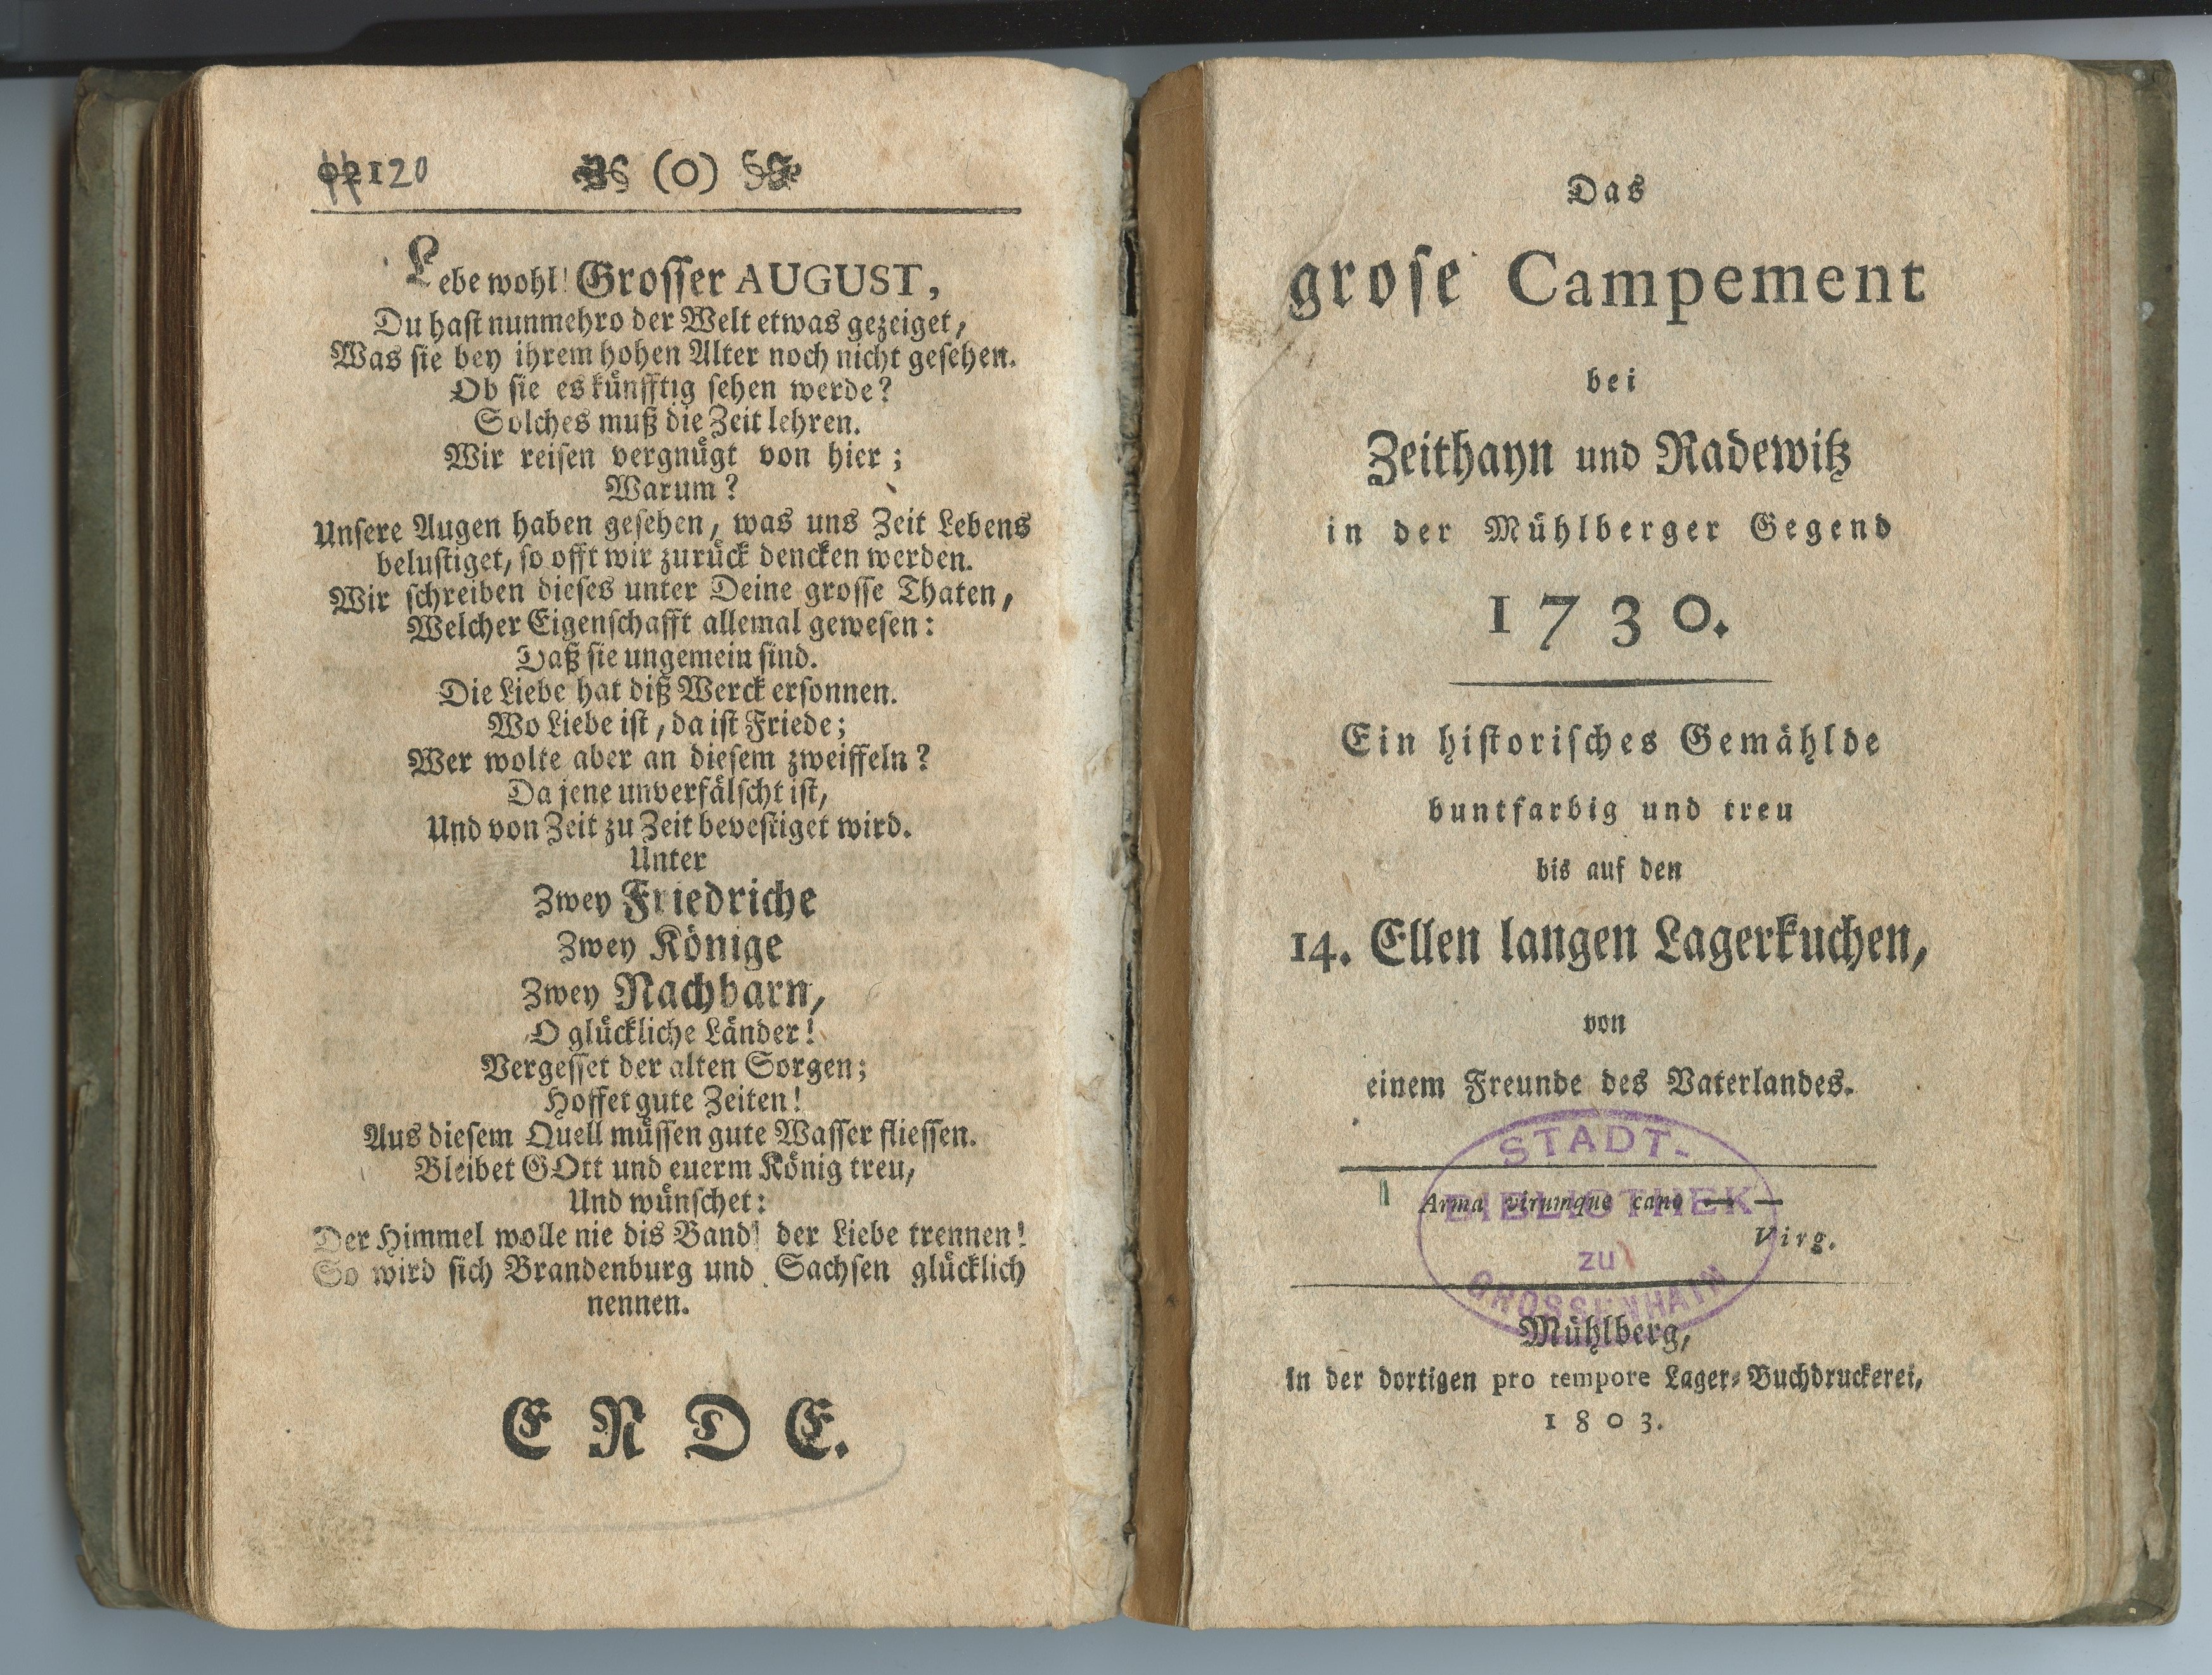 [Engelhardt, Karl August:] Das grose Campement bei Zeithayn und Radewitz [...] 1730, 1803 (Museum Alte Lateinschule CC BY-NC-SA)